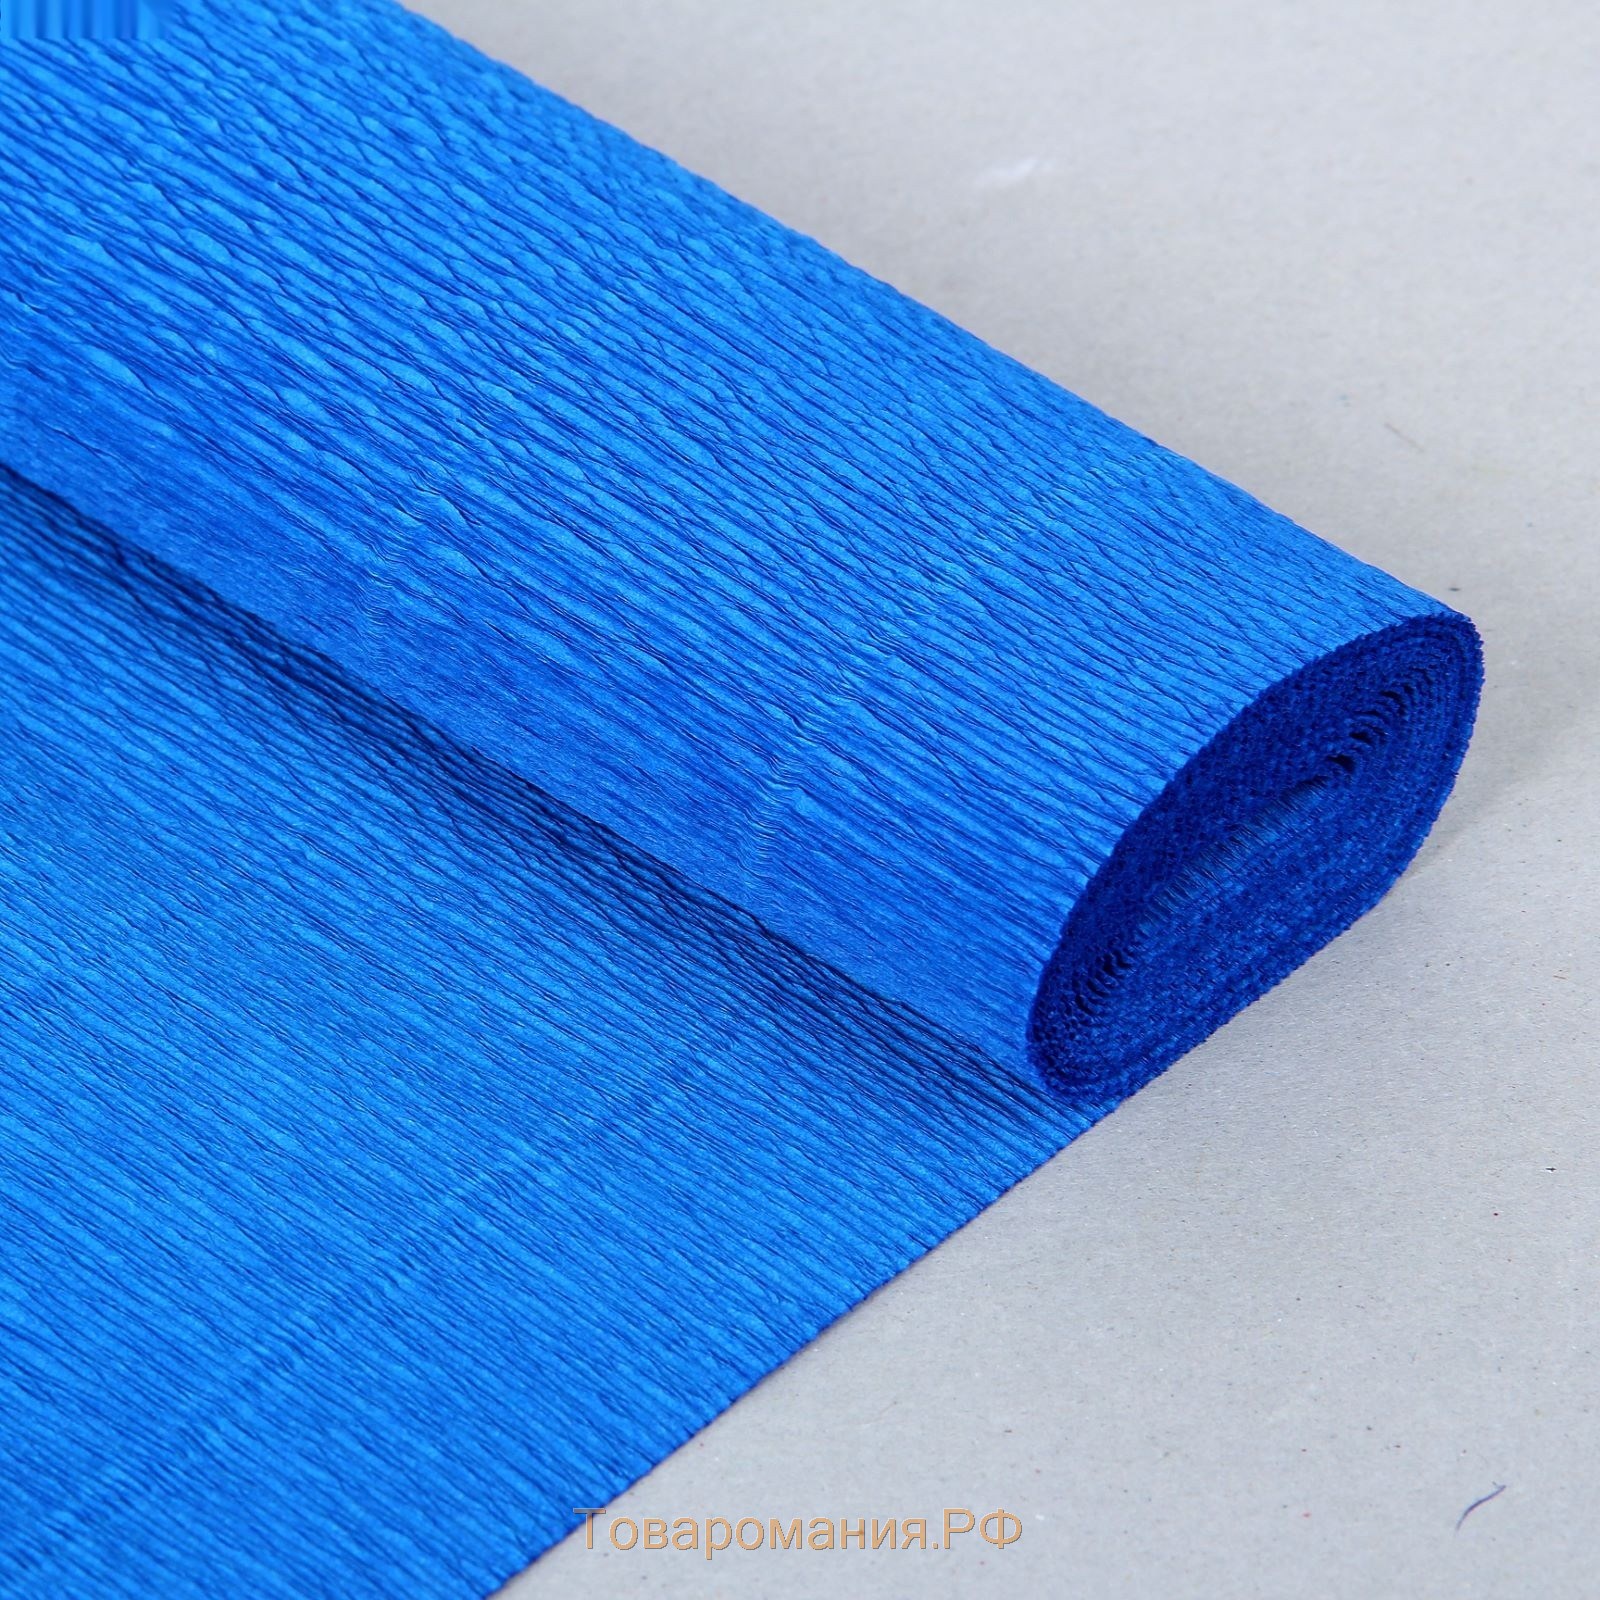 Бумага для упаковок и поделок, гофрированная, васильковая, синяя, однотонная, двусторонняя, рулон 1 шт., 0,5 х 2,5 м